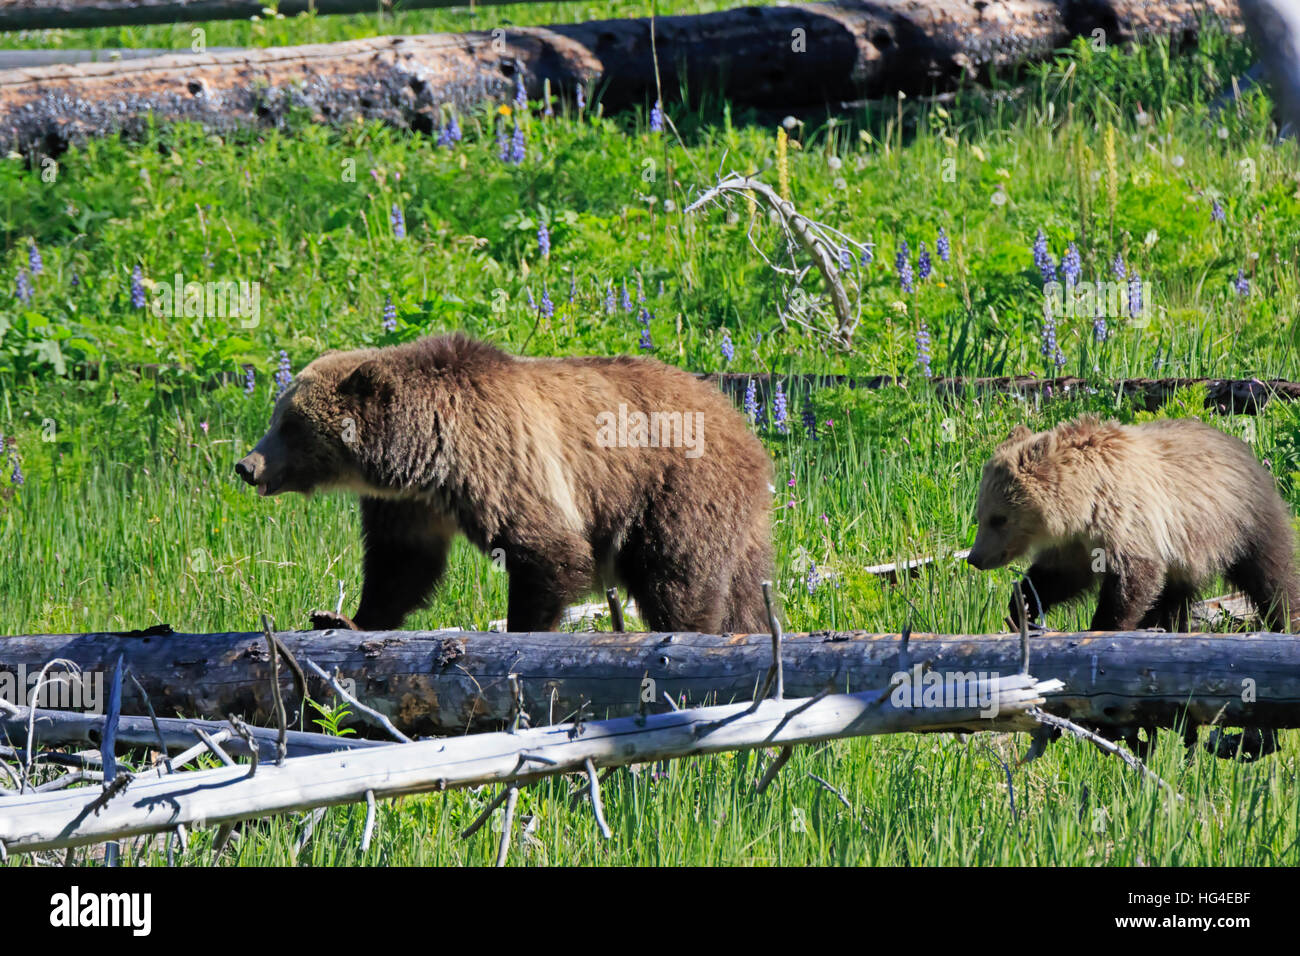 North American di orso bruno Ursus arctos horribilis, seminare con cub nel Parco Nazionale di Yellowstone Foto Stock